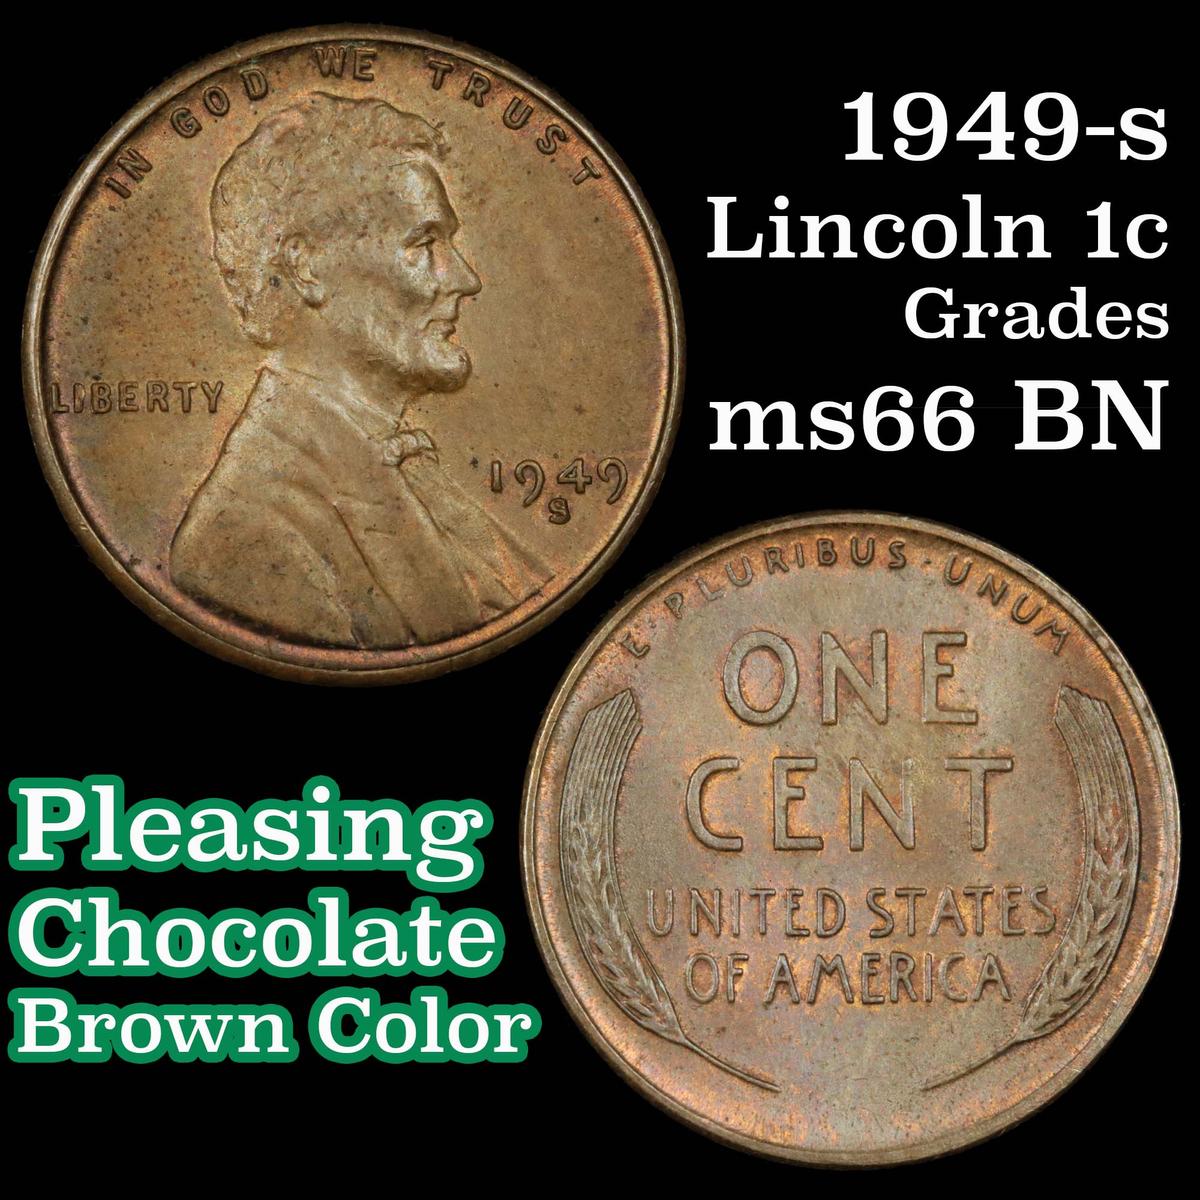 1949-s Lincoln Cent 1c Grades GEM+ Unc BN